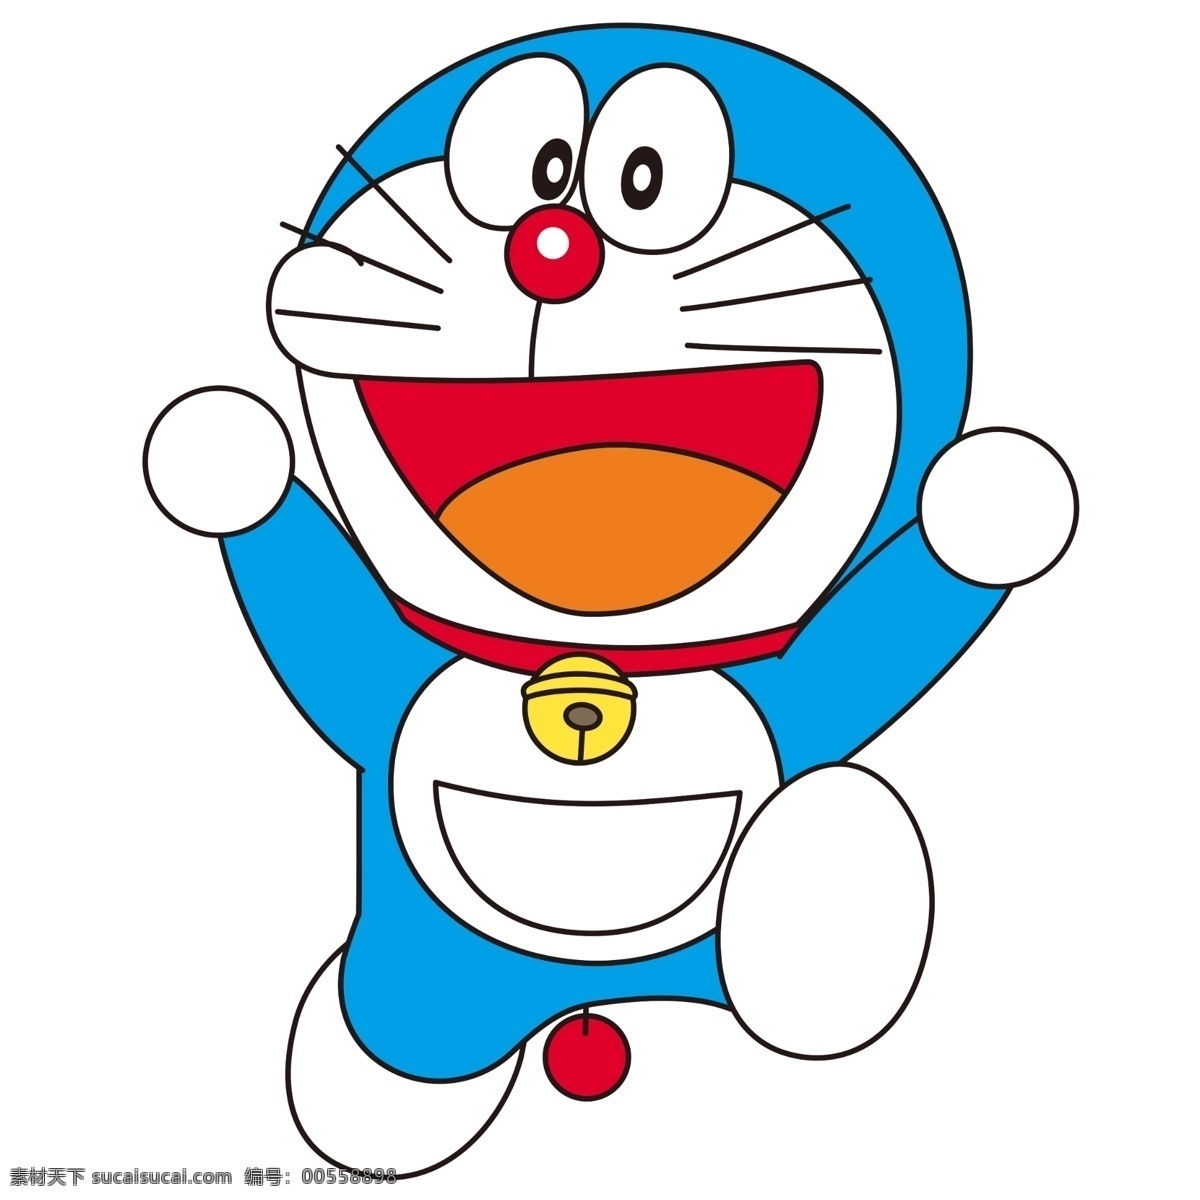 哆啦 a 梦 小 叮当 哆啦a梦 小叮当 机器猫 动漫 卡通 大雄 猫 蓝色猫 人物 动漫动画 动漫人物